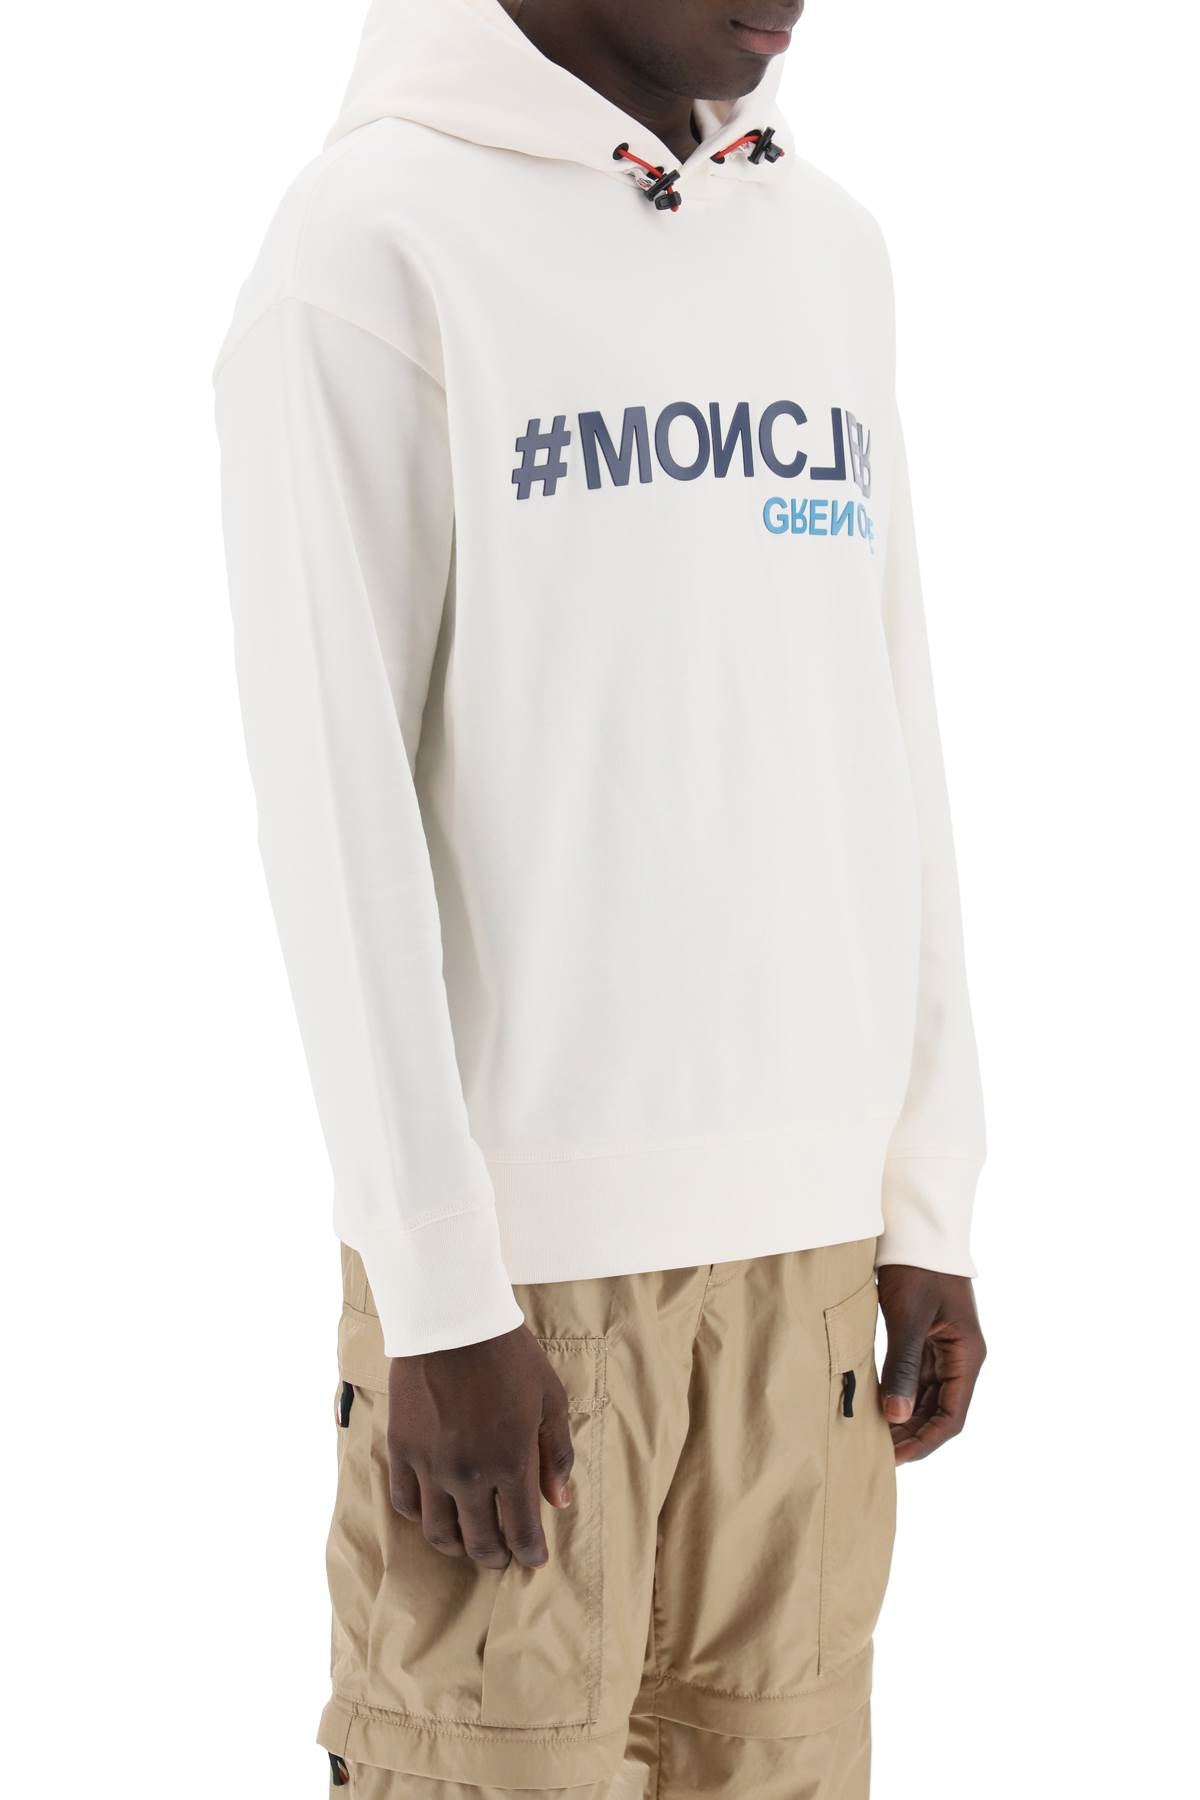 Moncler Grenoble hooded sweatshirt with 8G000108098U041C